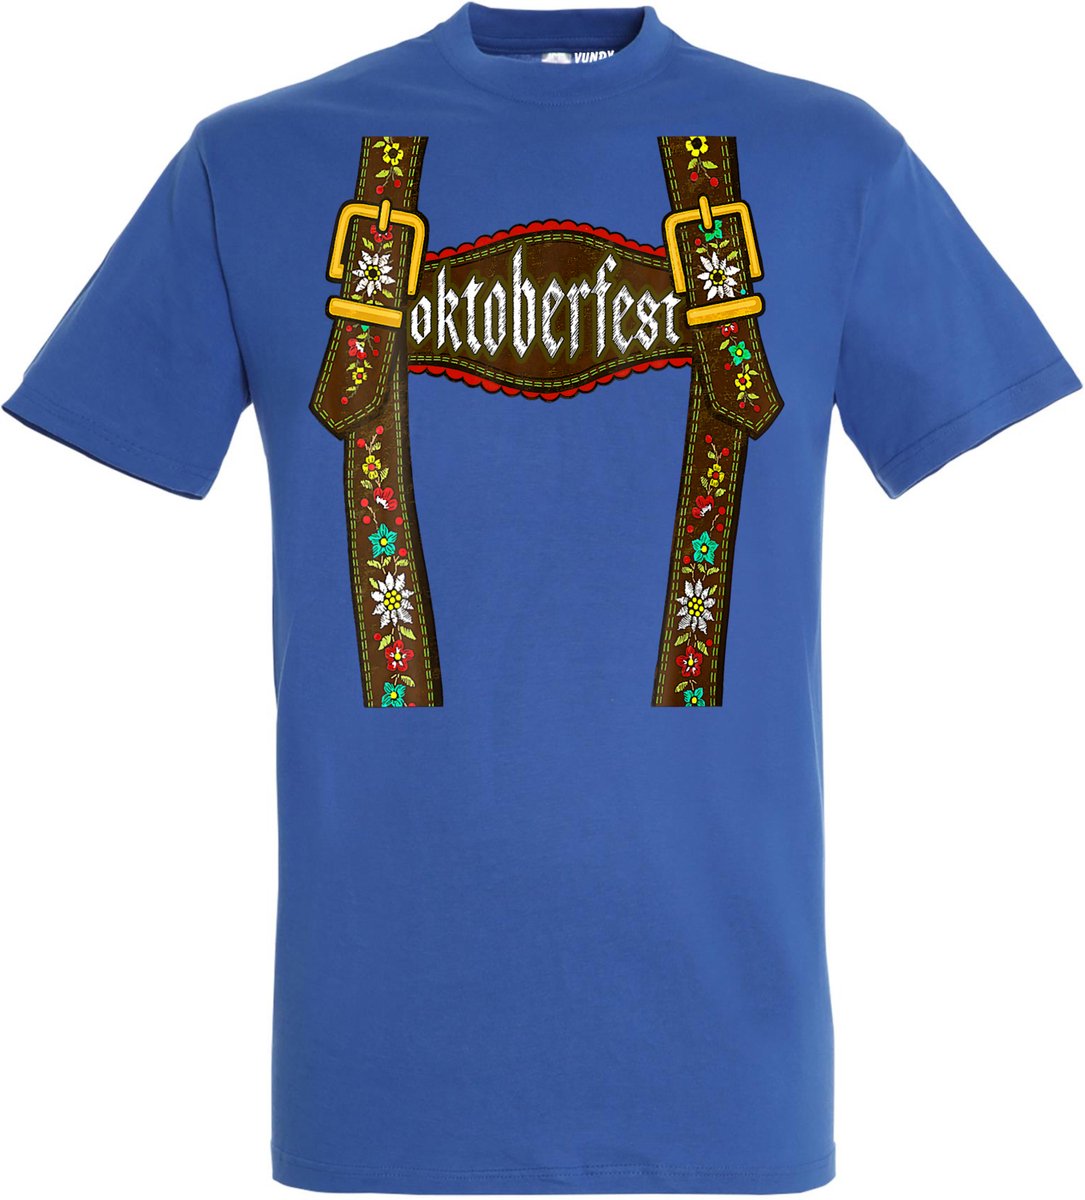 T-shirt Lederhosen man | Oktoberfest dames heren | Tiroler outfit | Blauw | maat XXL